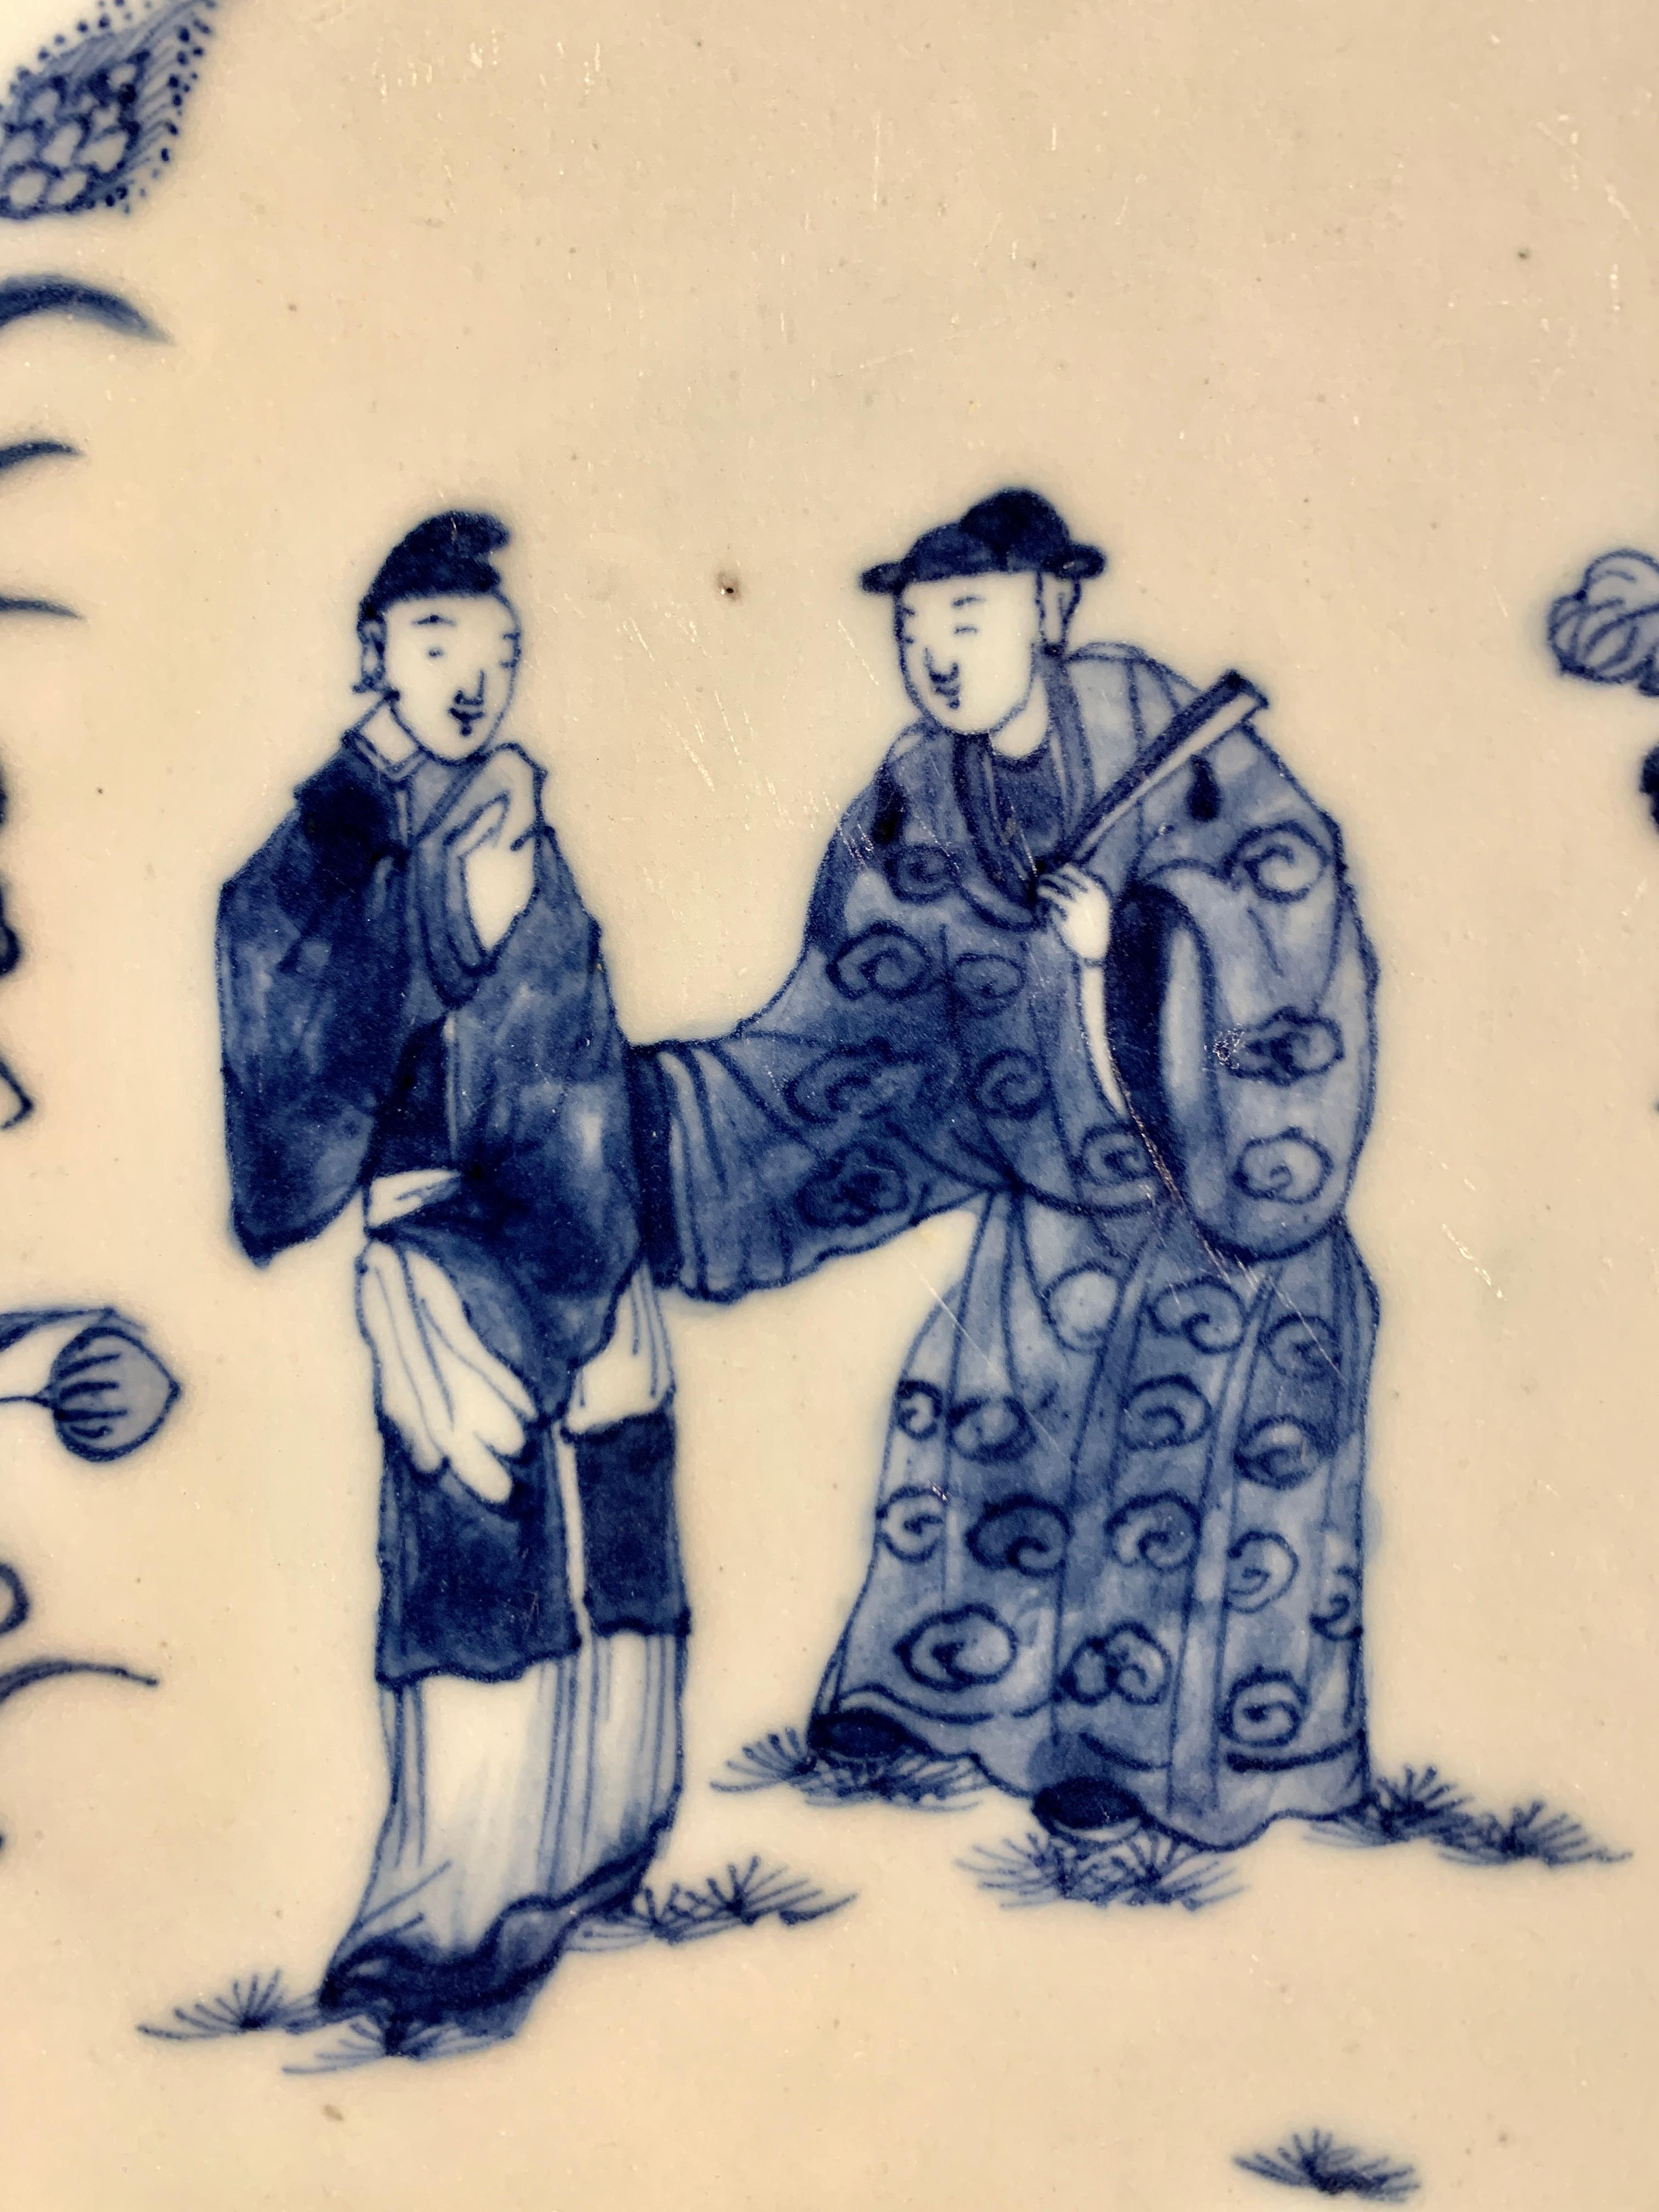 Eine schöne und ungewöhnliche chinesische Export blau und weiß dekoriert Porzellan blattförmige Schale oder Ladegerät, Qianlong-Periode, Mitte des 18. Jahrhunderts, um 1760, China.

Die Schale oder das Ladegerät hat eine interessante blattförmige